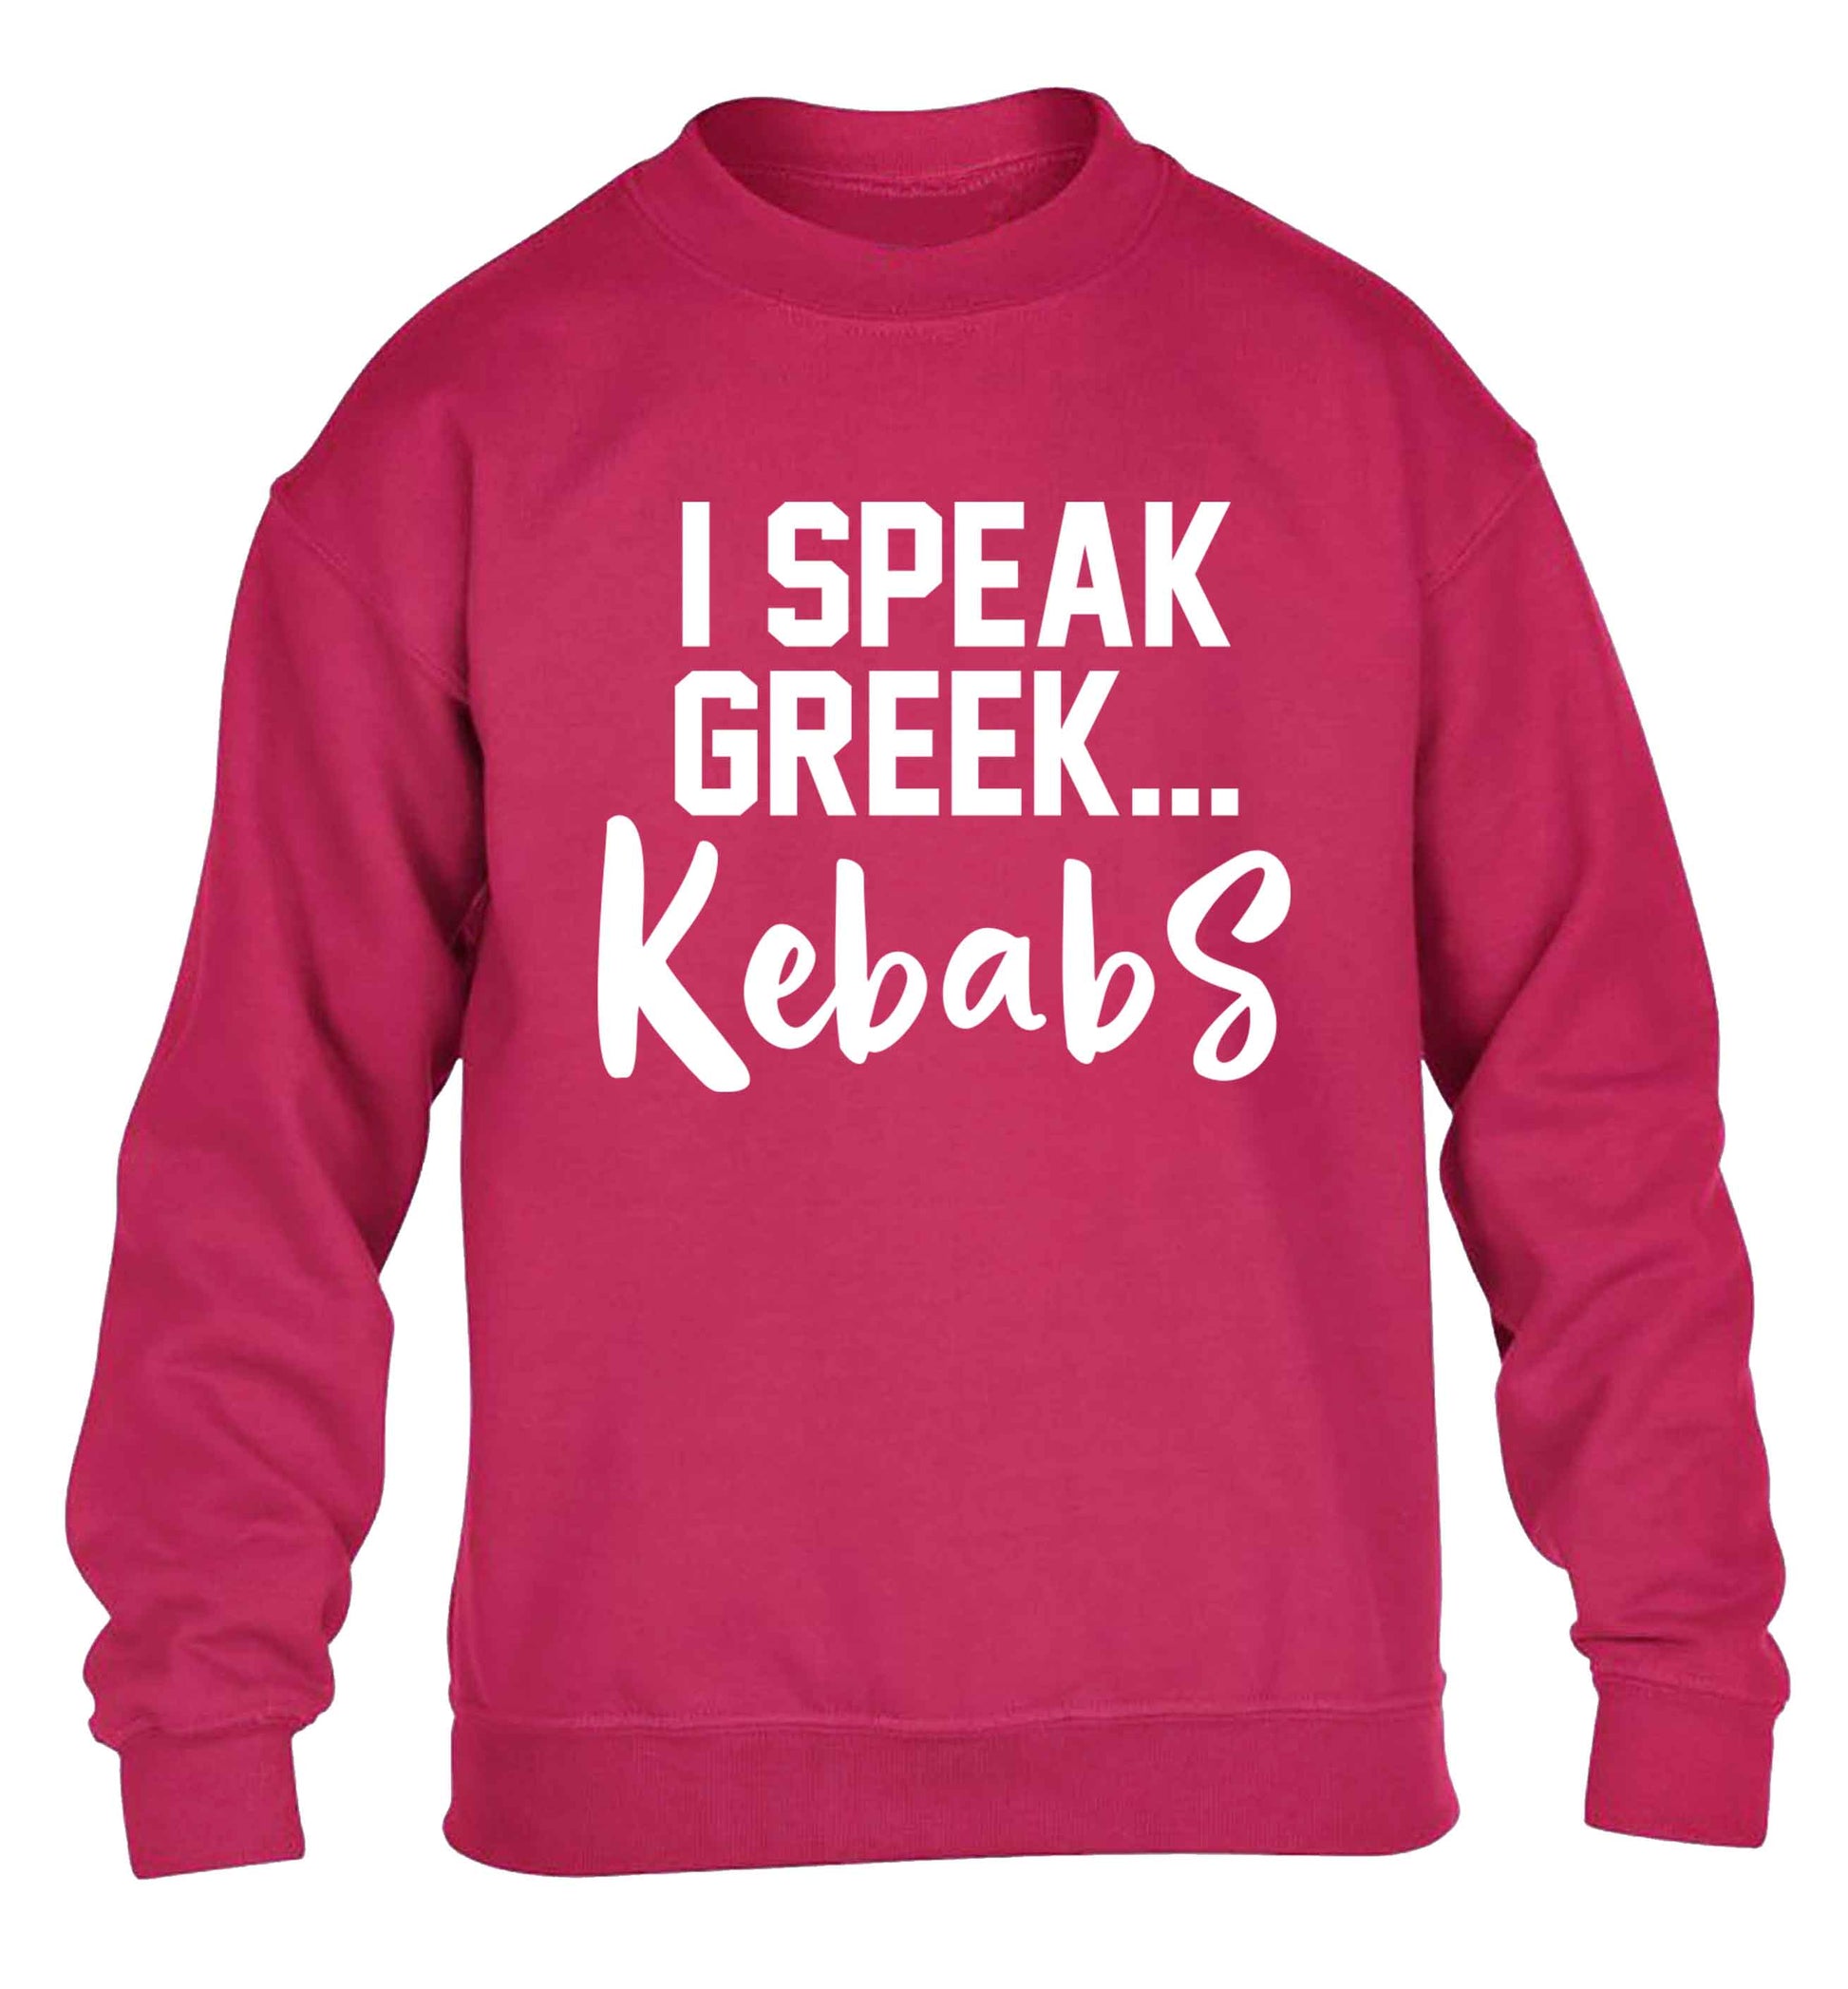 I speak Greek...kebabs children's pink sweater 12-13 Years